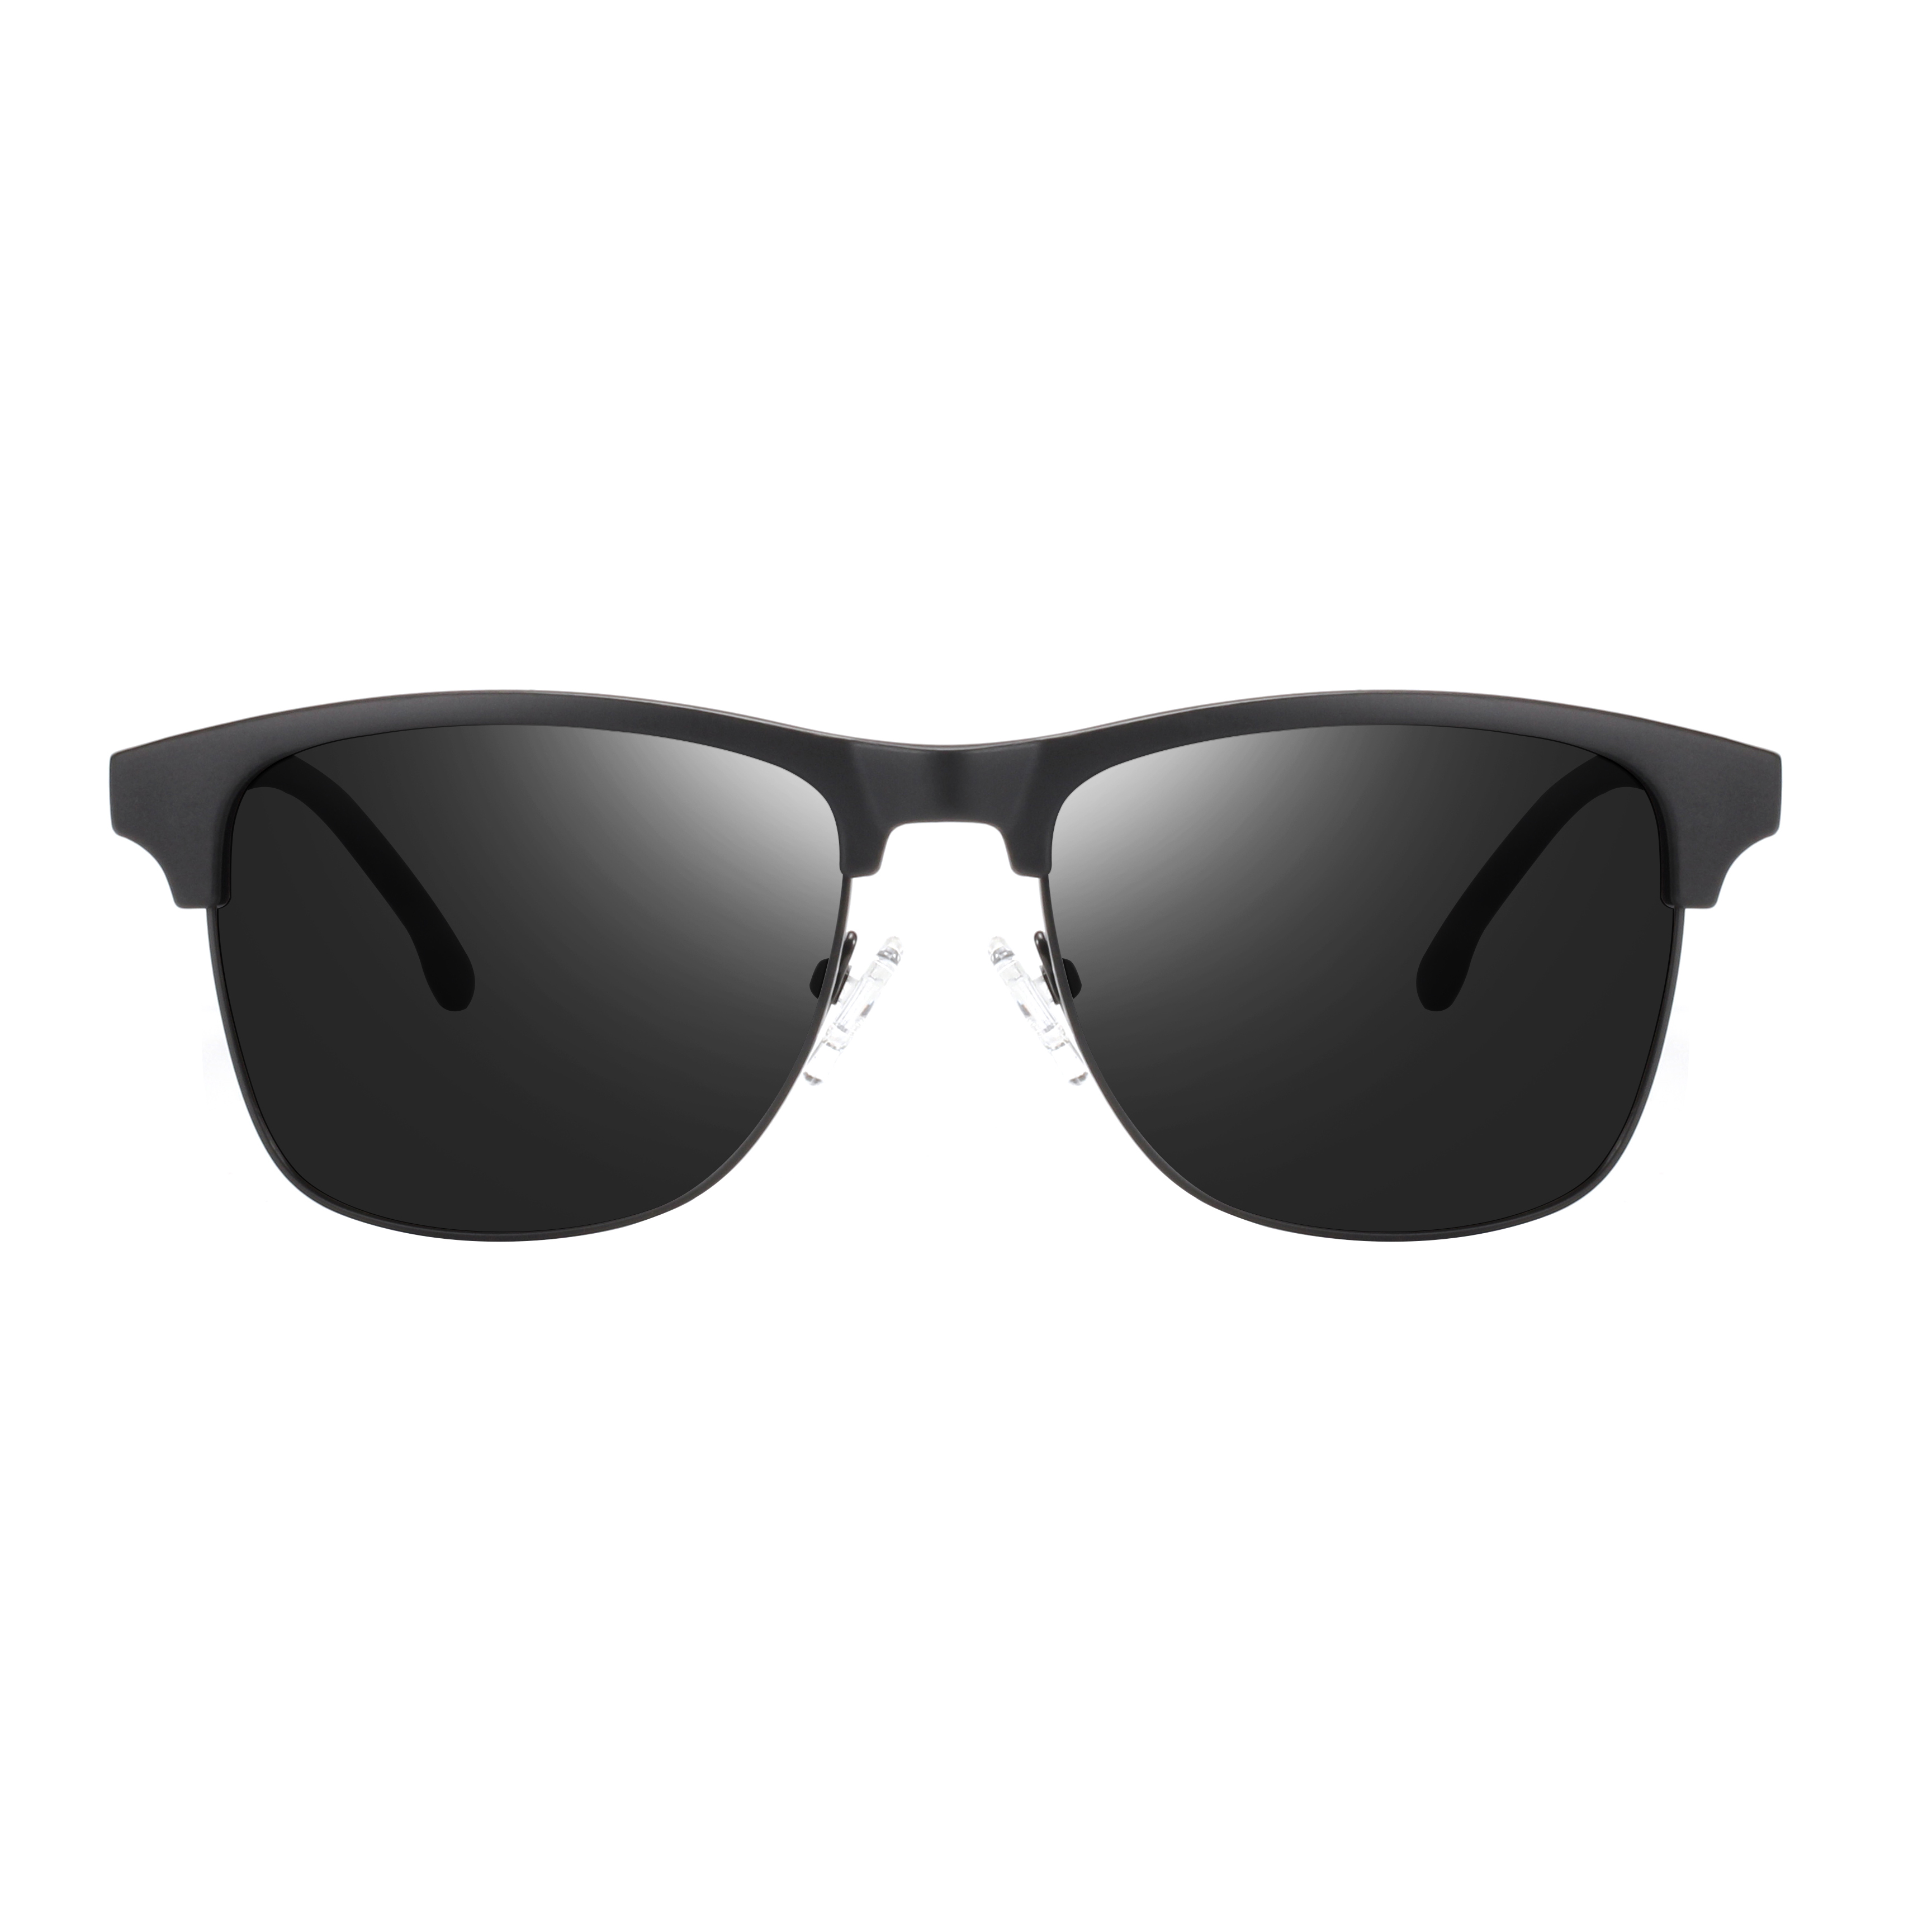 Eugenia China Fábrica de gafas de sol personalizada Etiqueta privada Hombres polarizados Gafas de sol